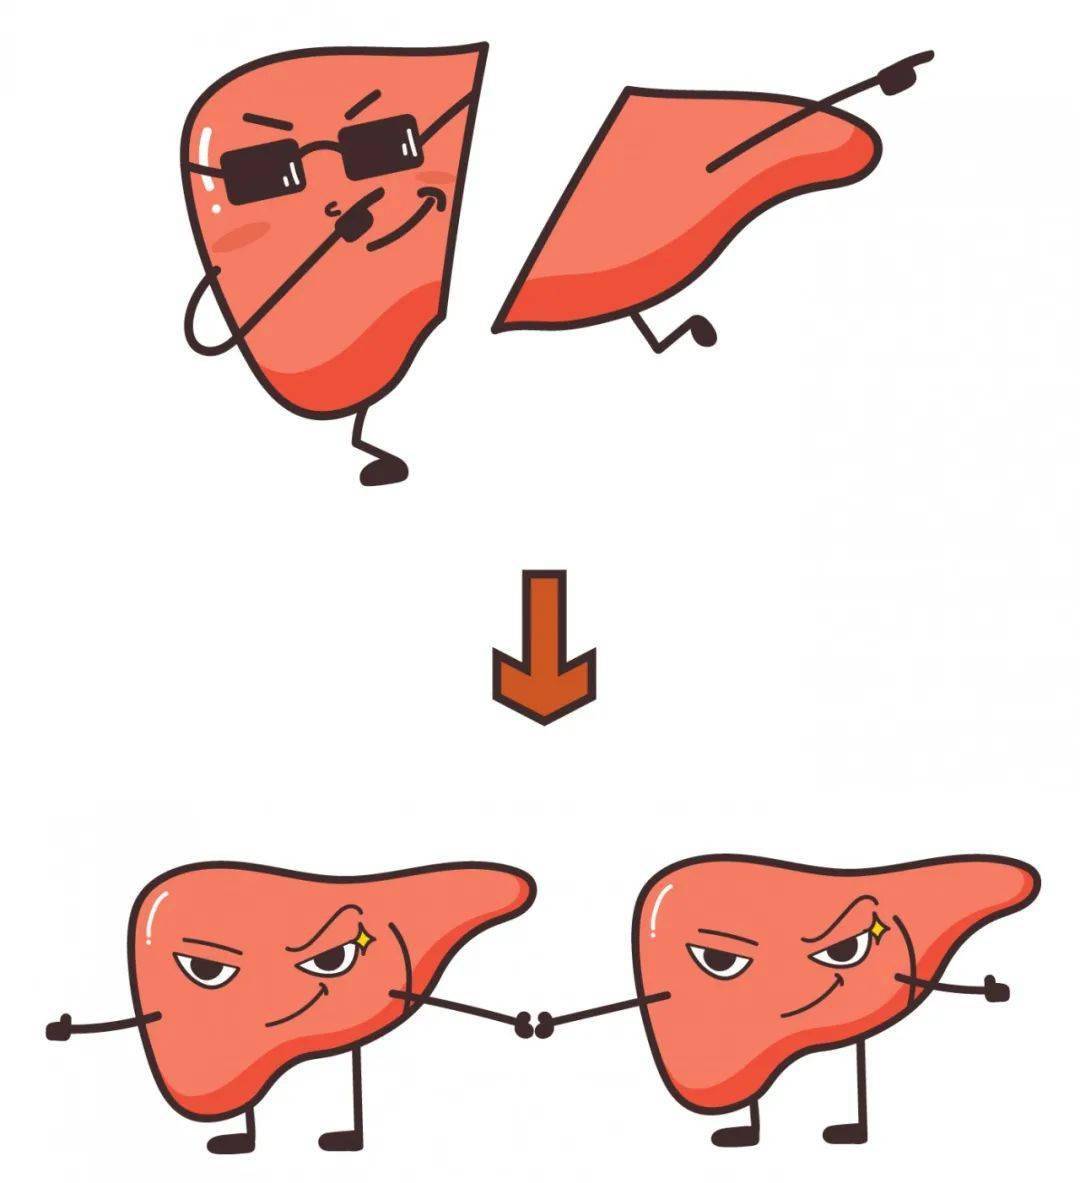 肝脏在人体内的主要功能是"代谢"